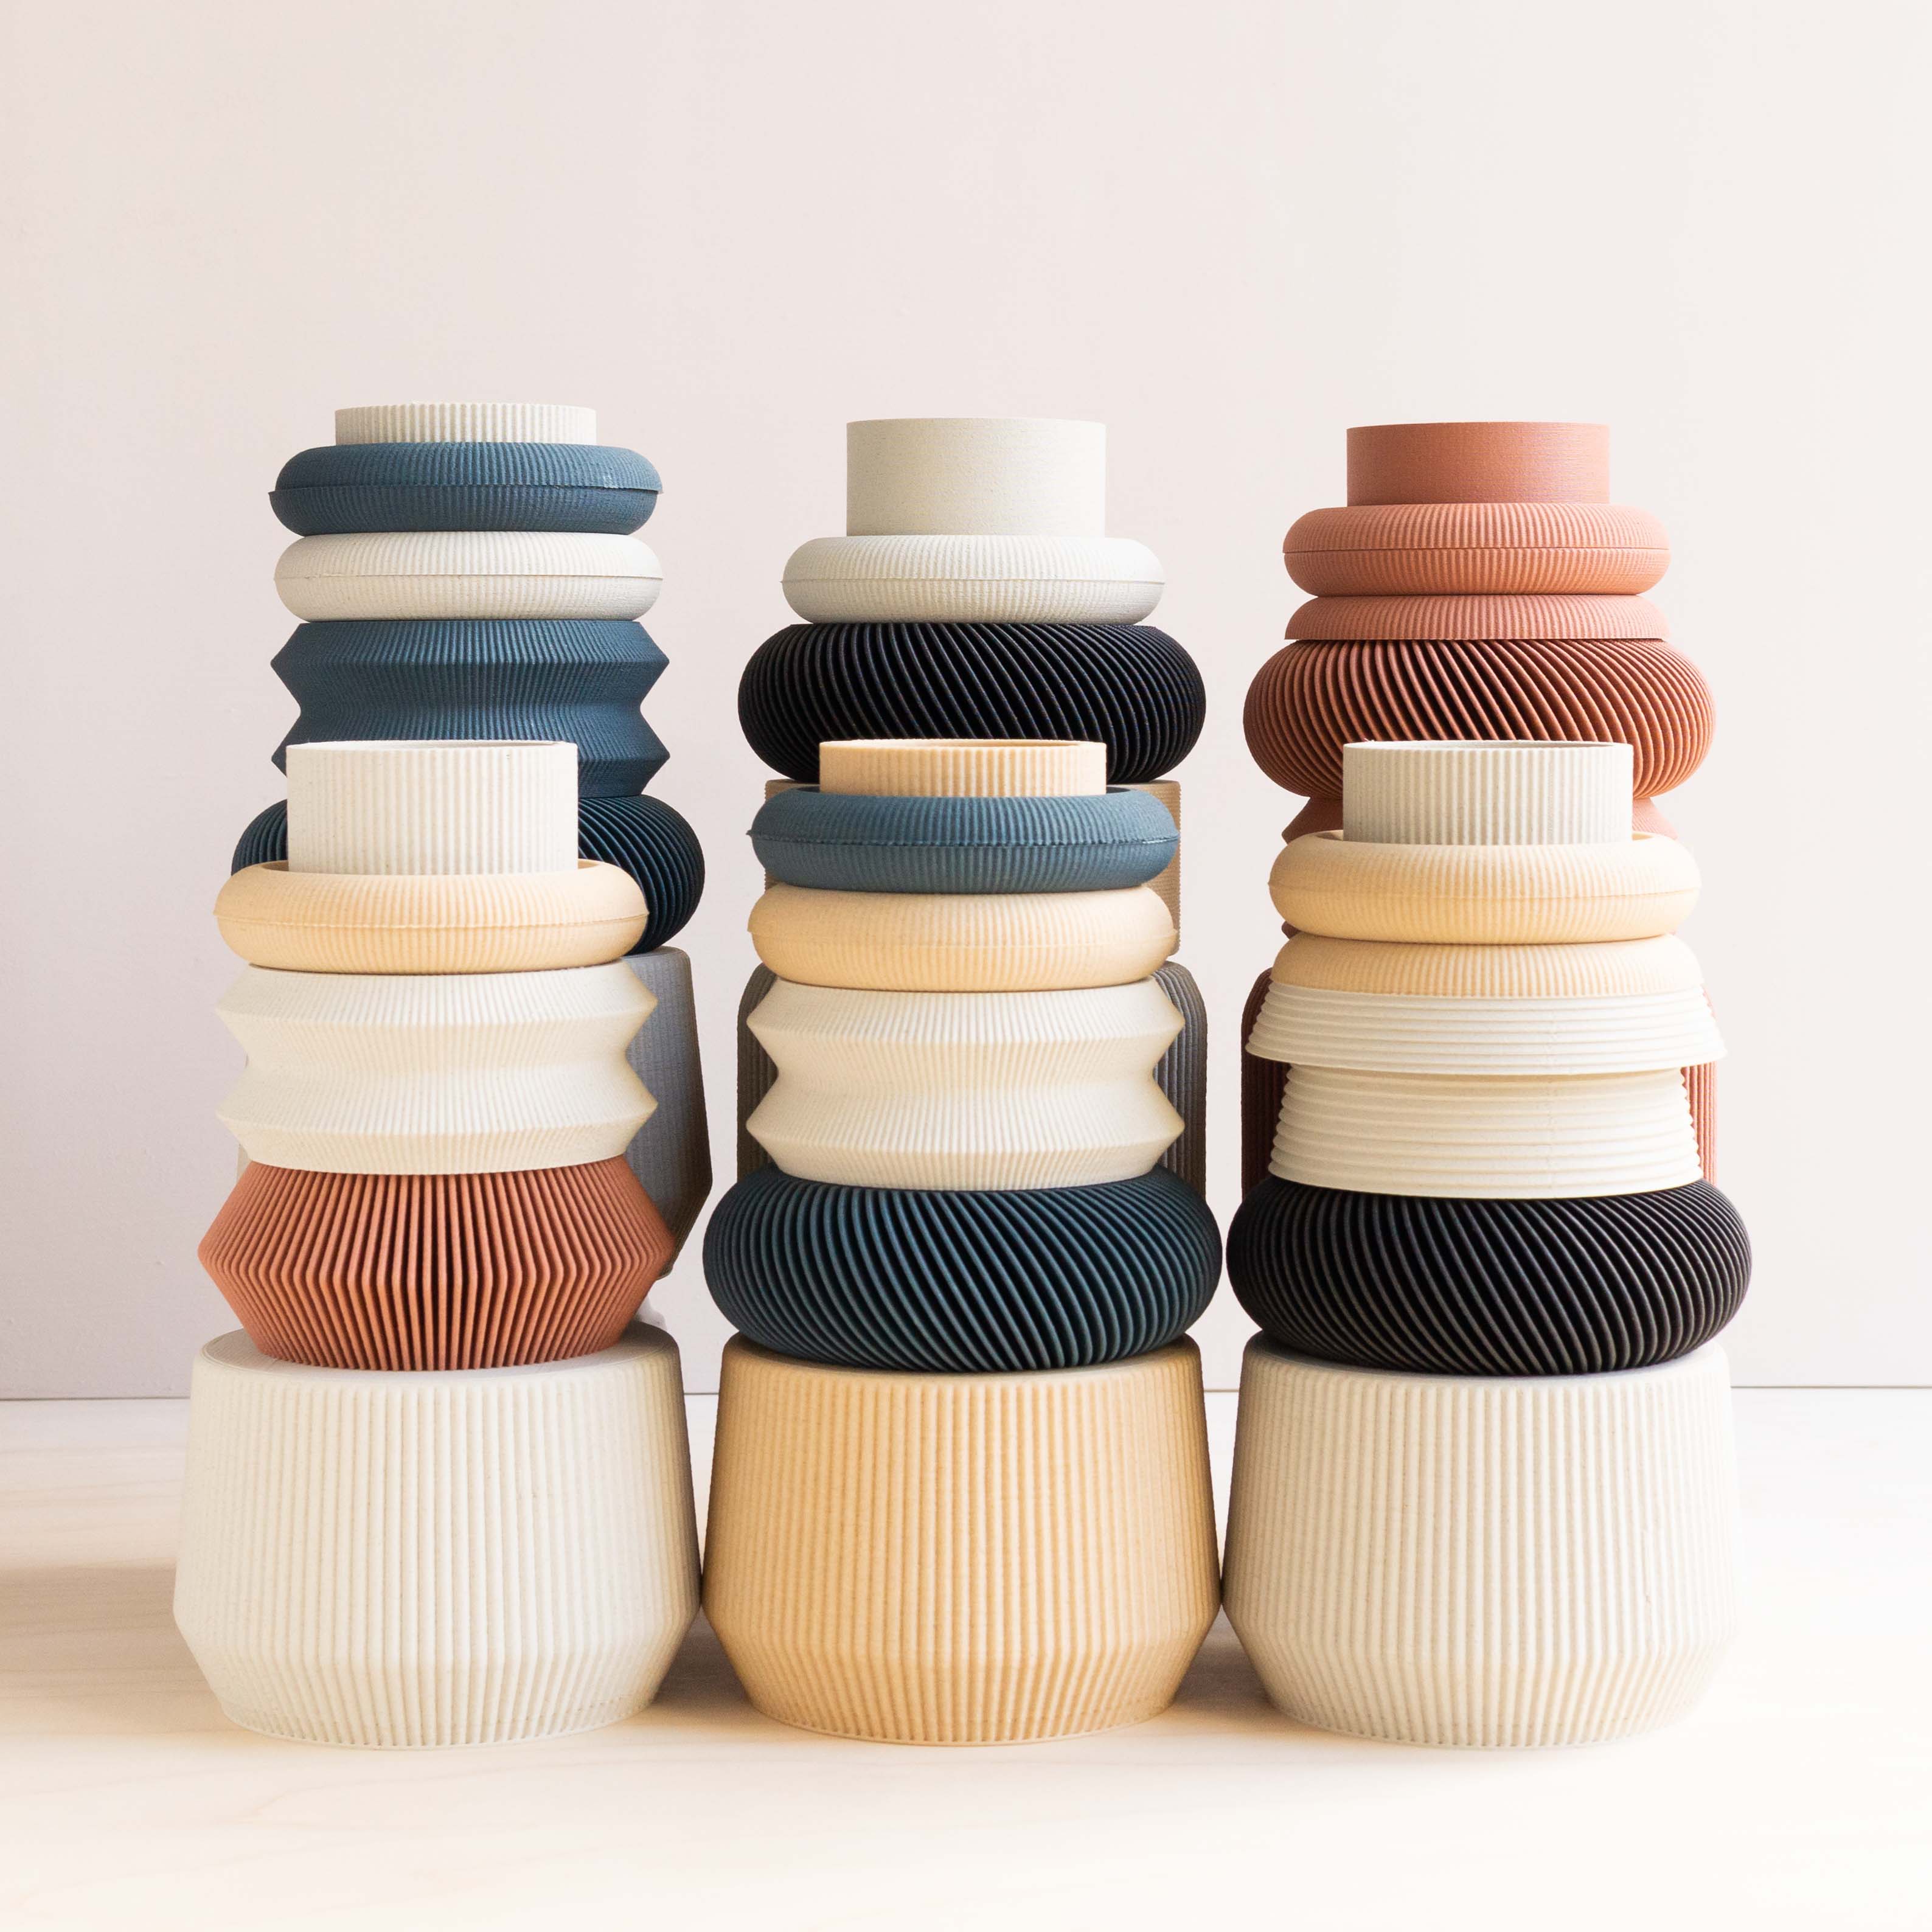 Minimum Design: Modular Venice Vase